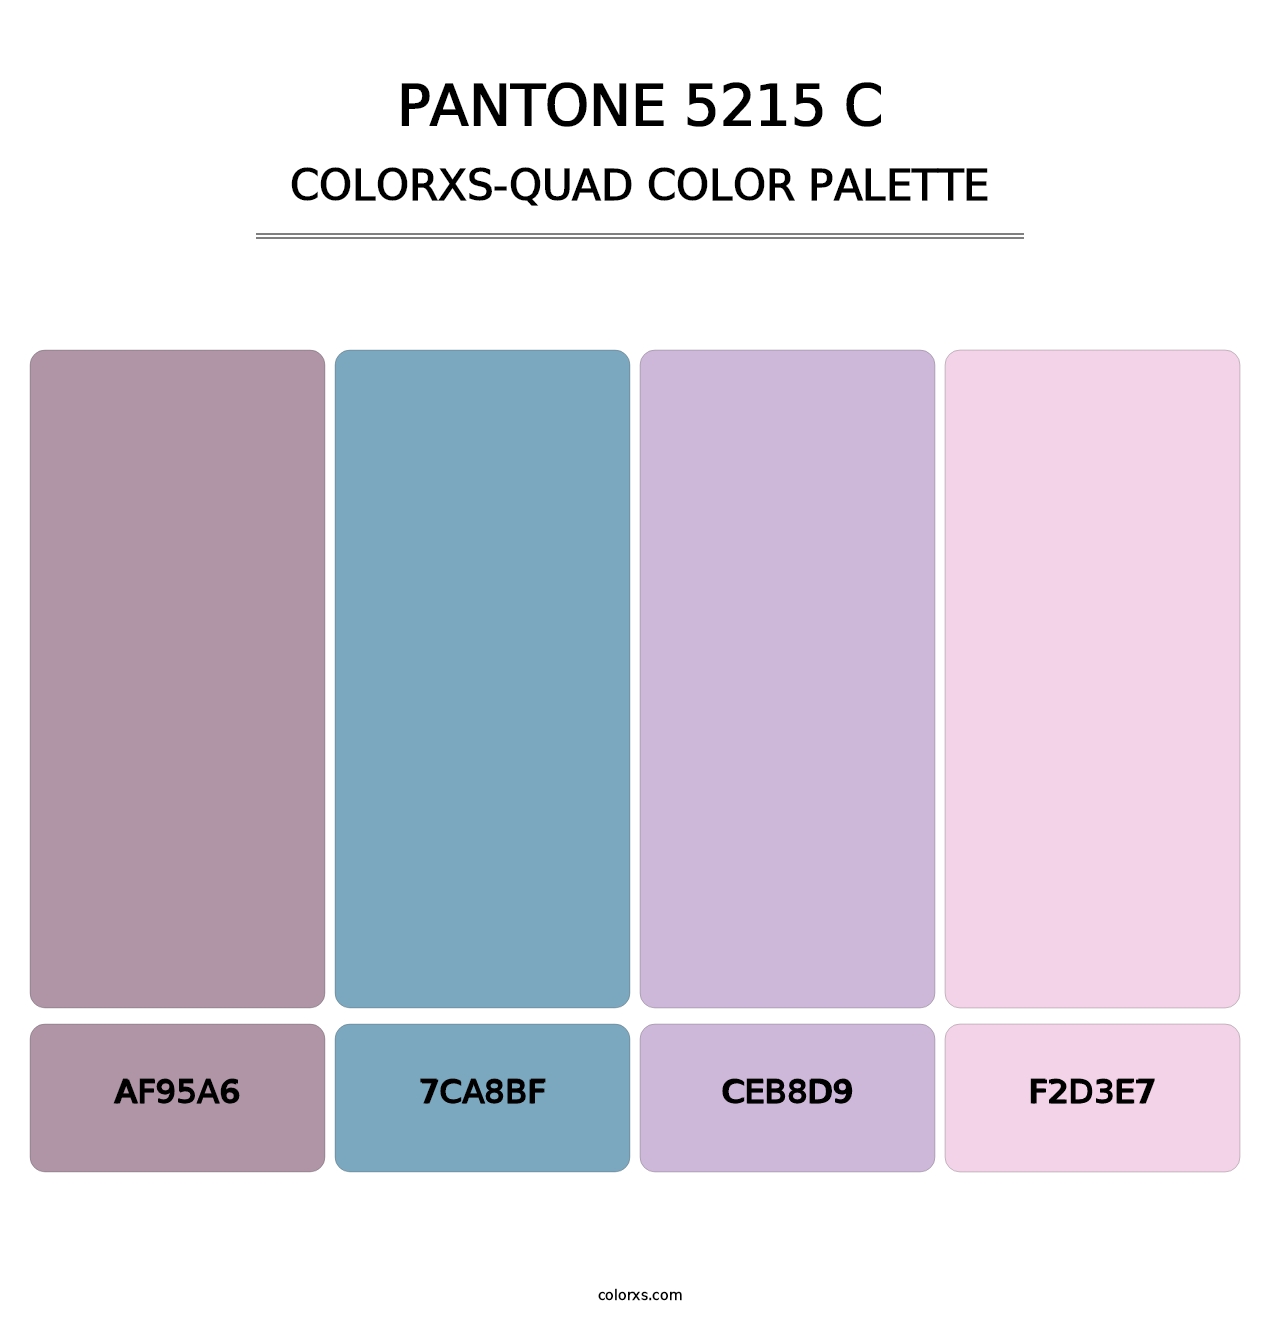 PANTONE 5215 C - Colorxs Quad Palette